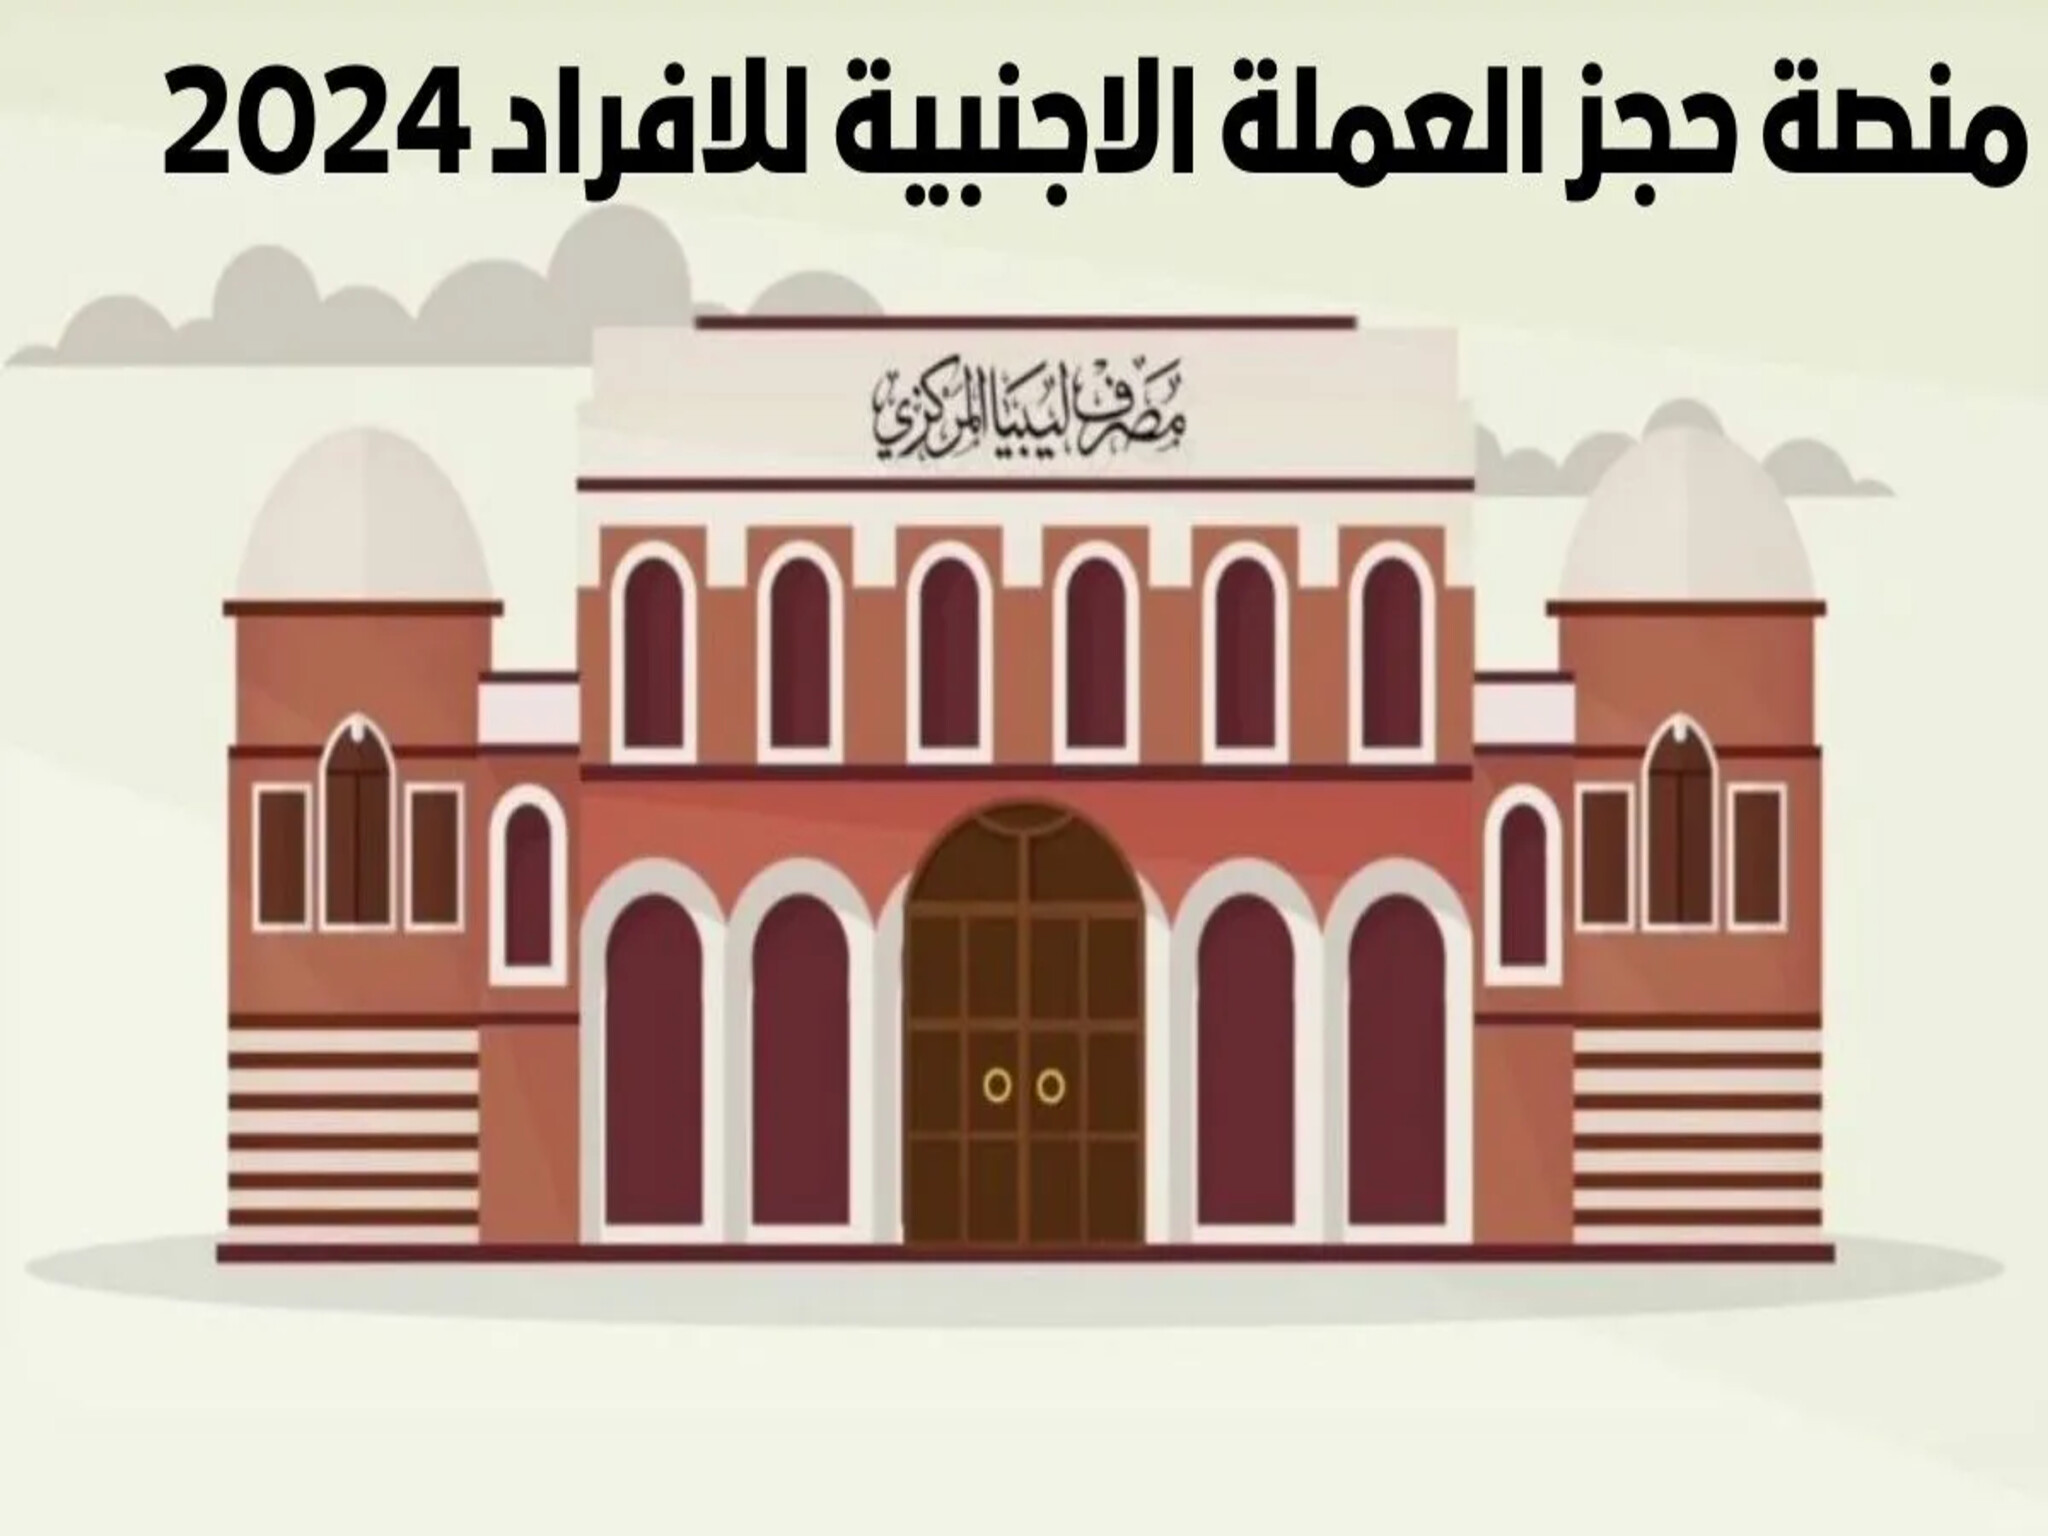 التسجيل في منصة حجز العملة الاجنبية للافراد 2024 منظومة الاغراض الشخصية في ليبيا